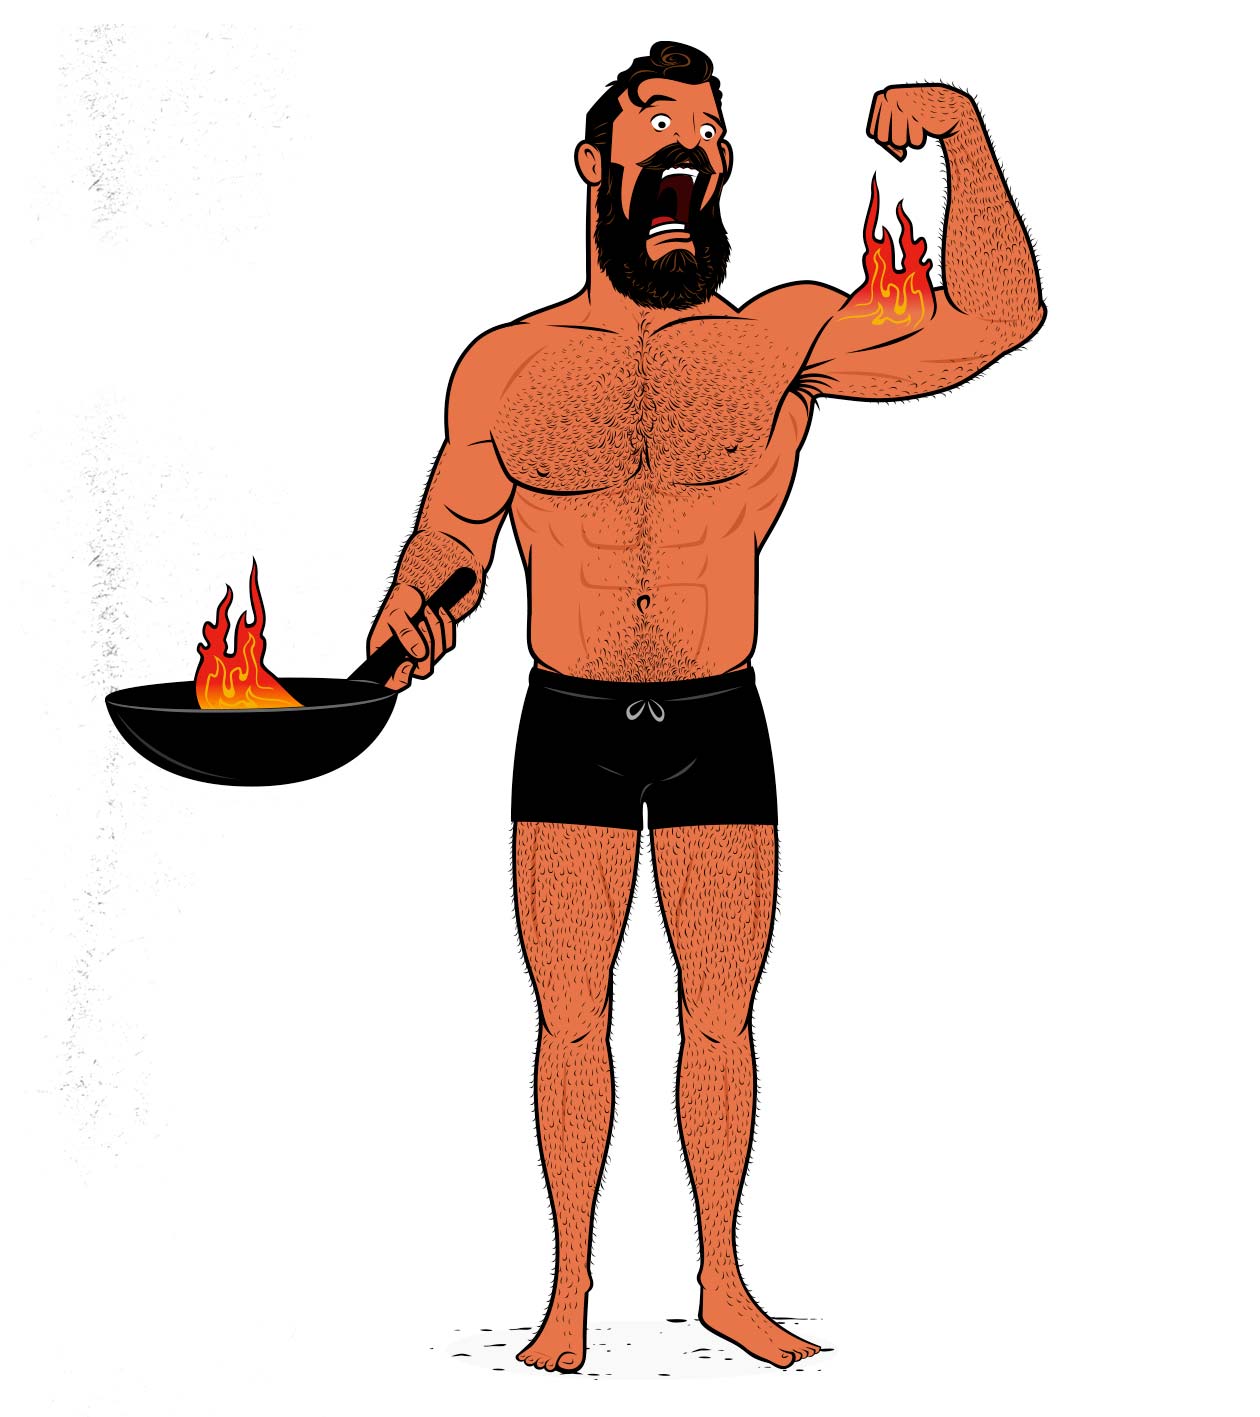 Ilustración de un fisicoculturista cocinando para ganar músculo.